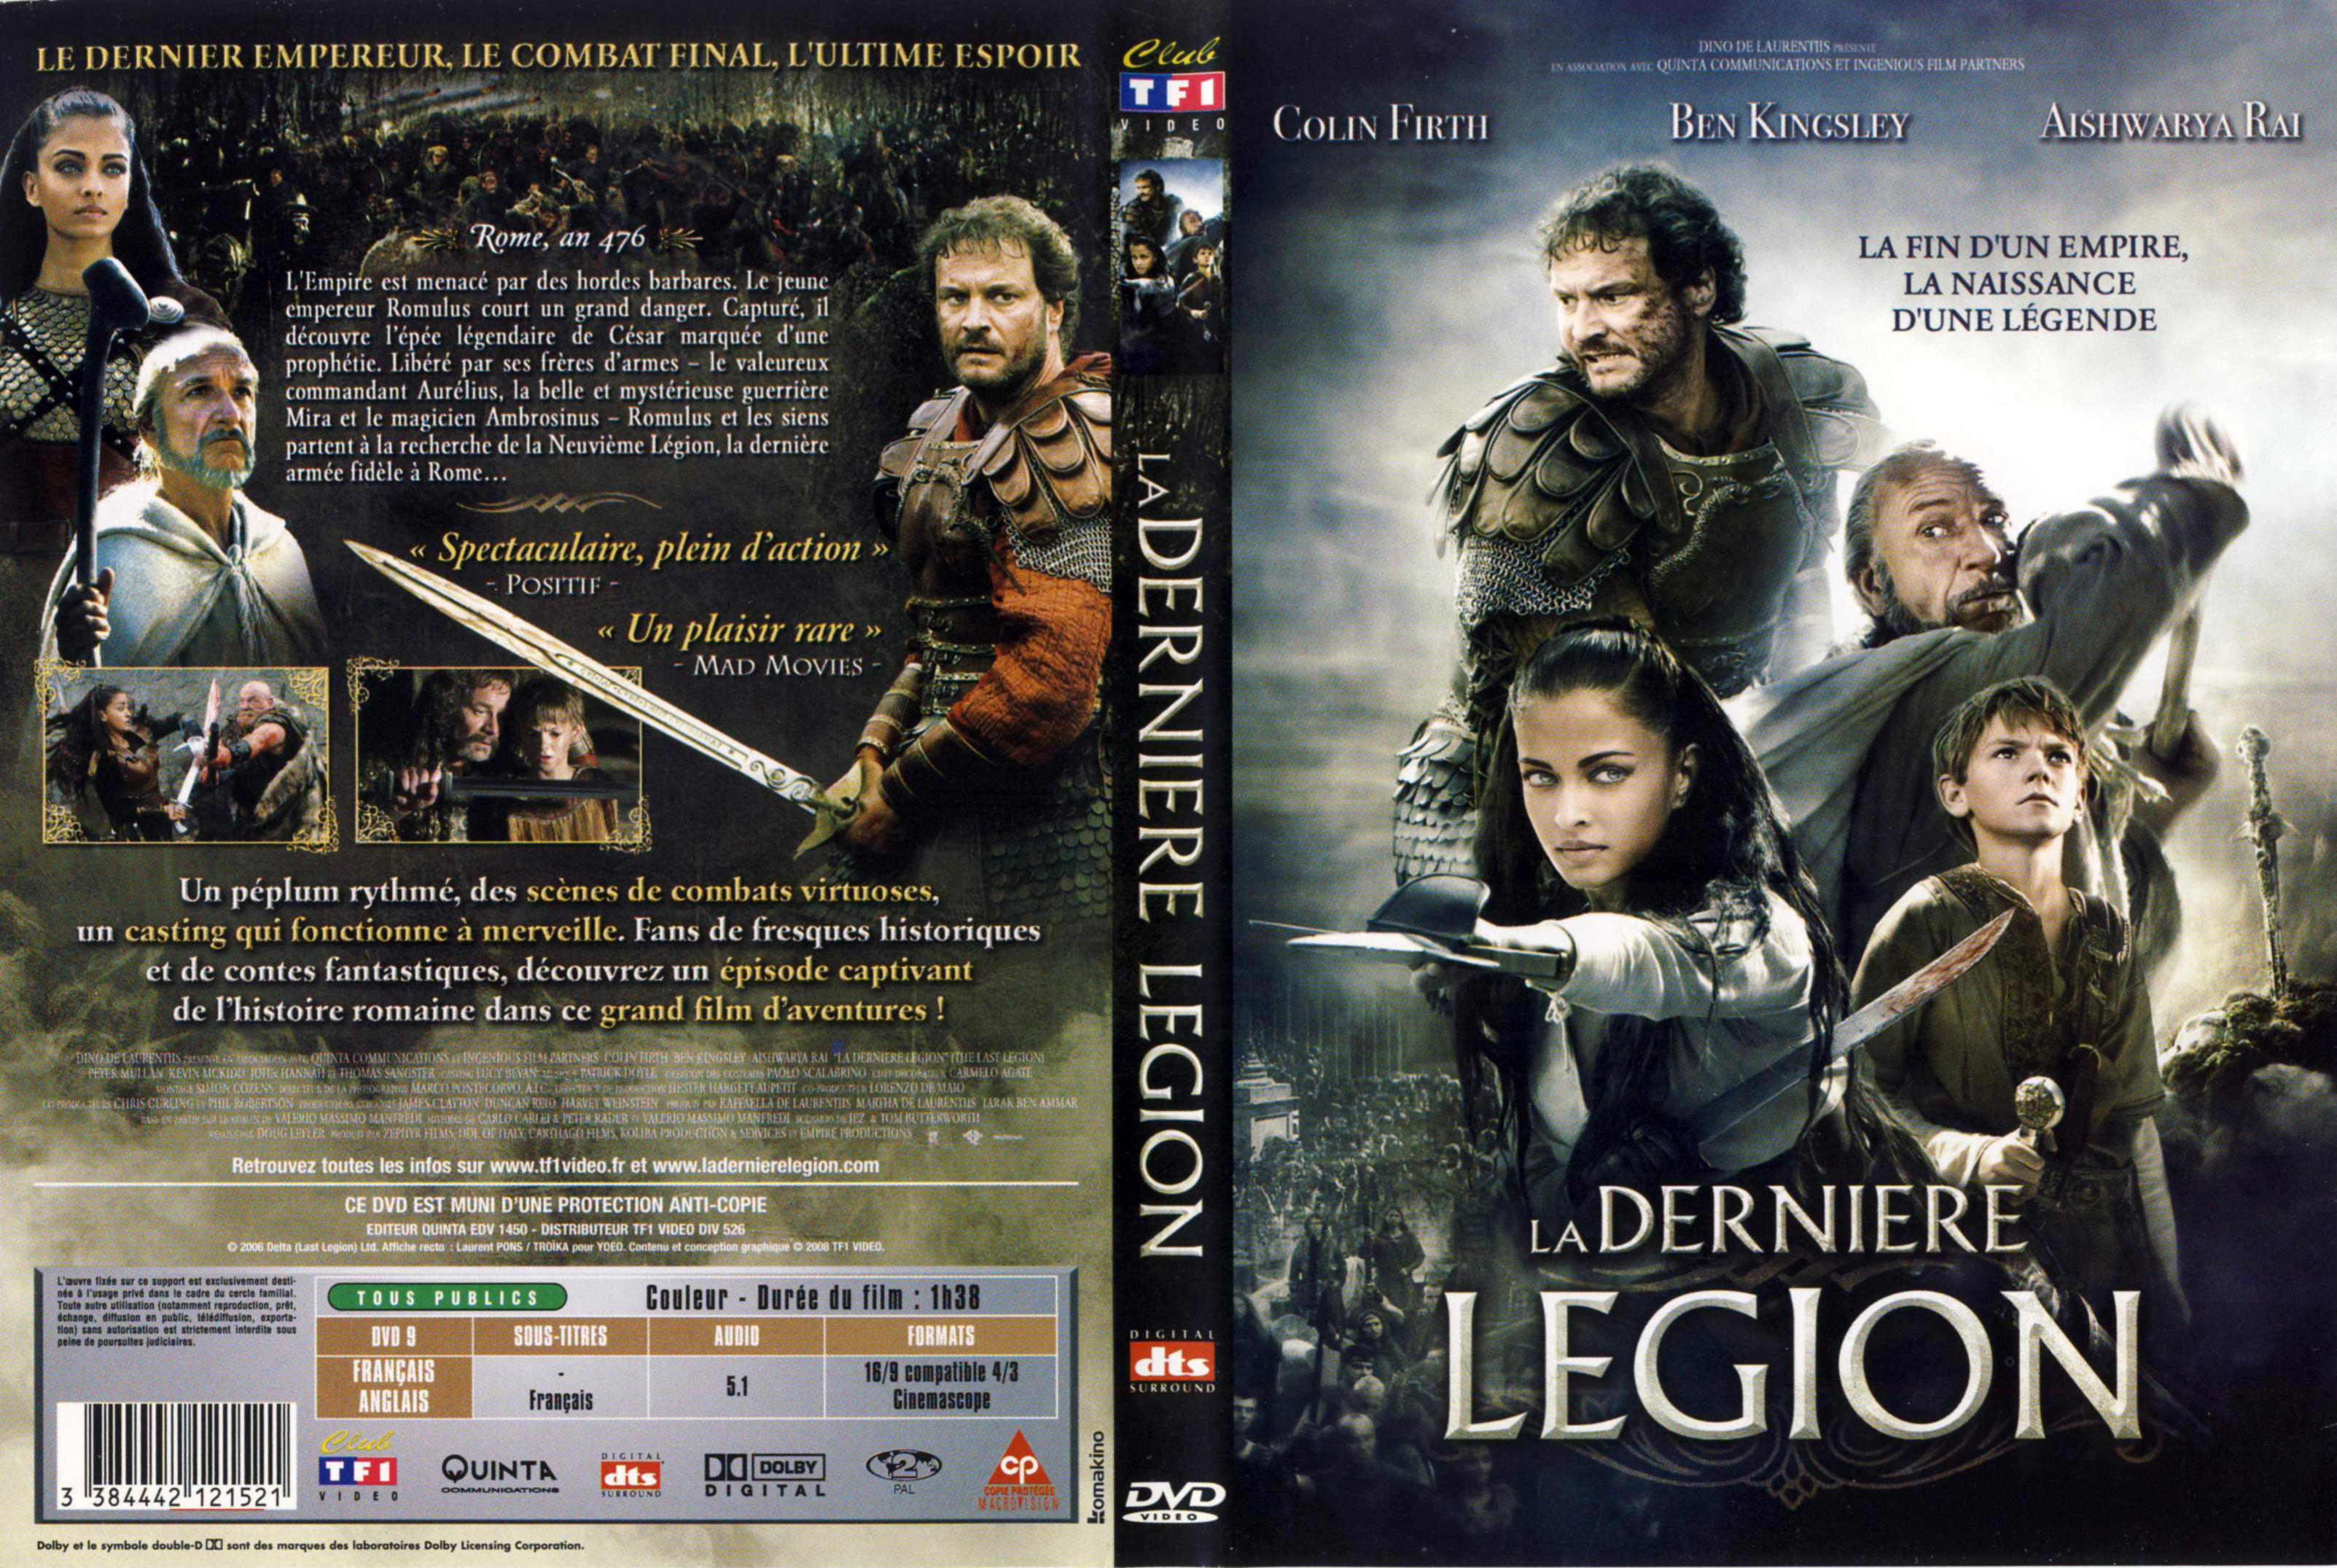 Jaquette DVD La dernire lgion v3